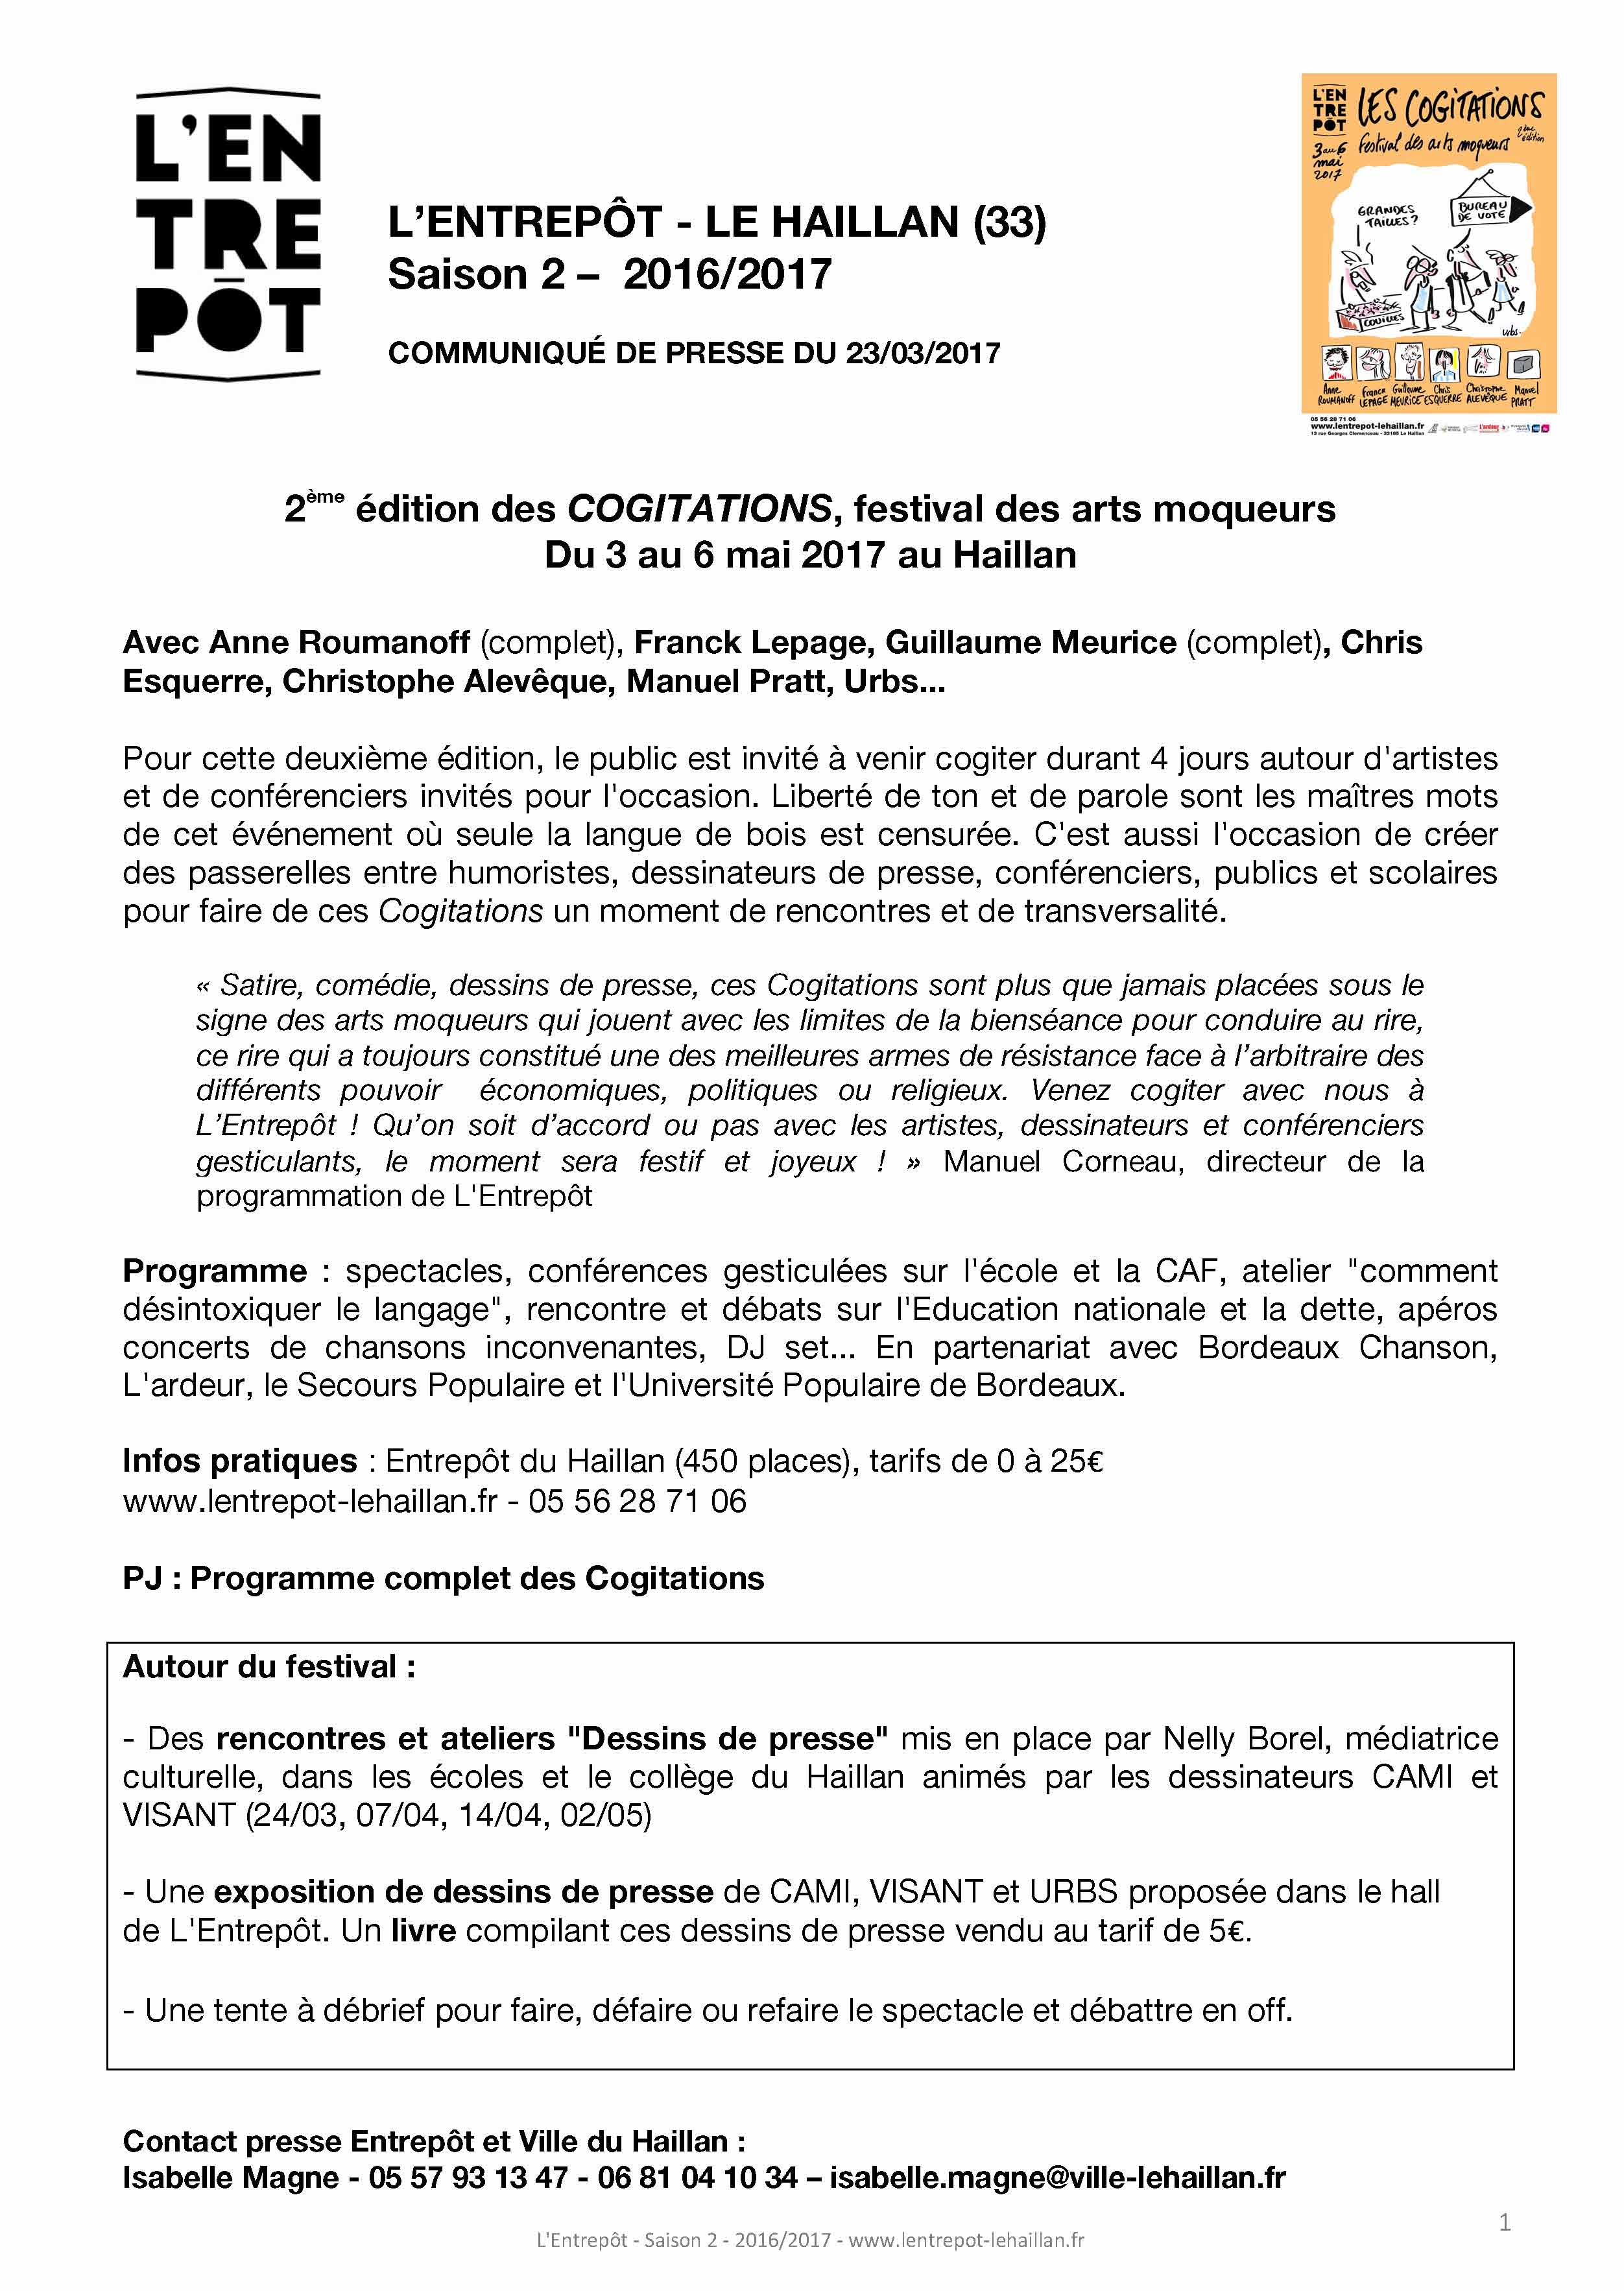 cp_-2eme-edition-des-cogitations_lentrepot-le-haillan